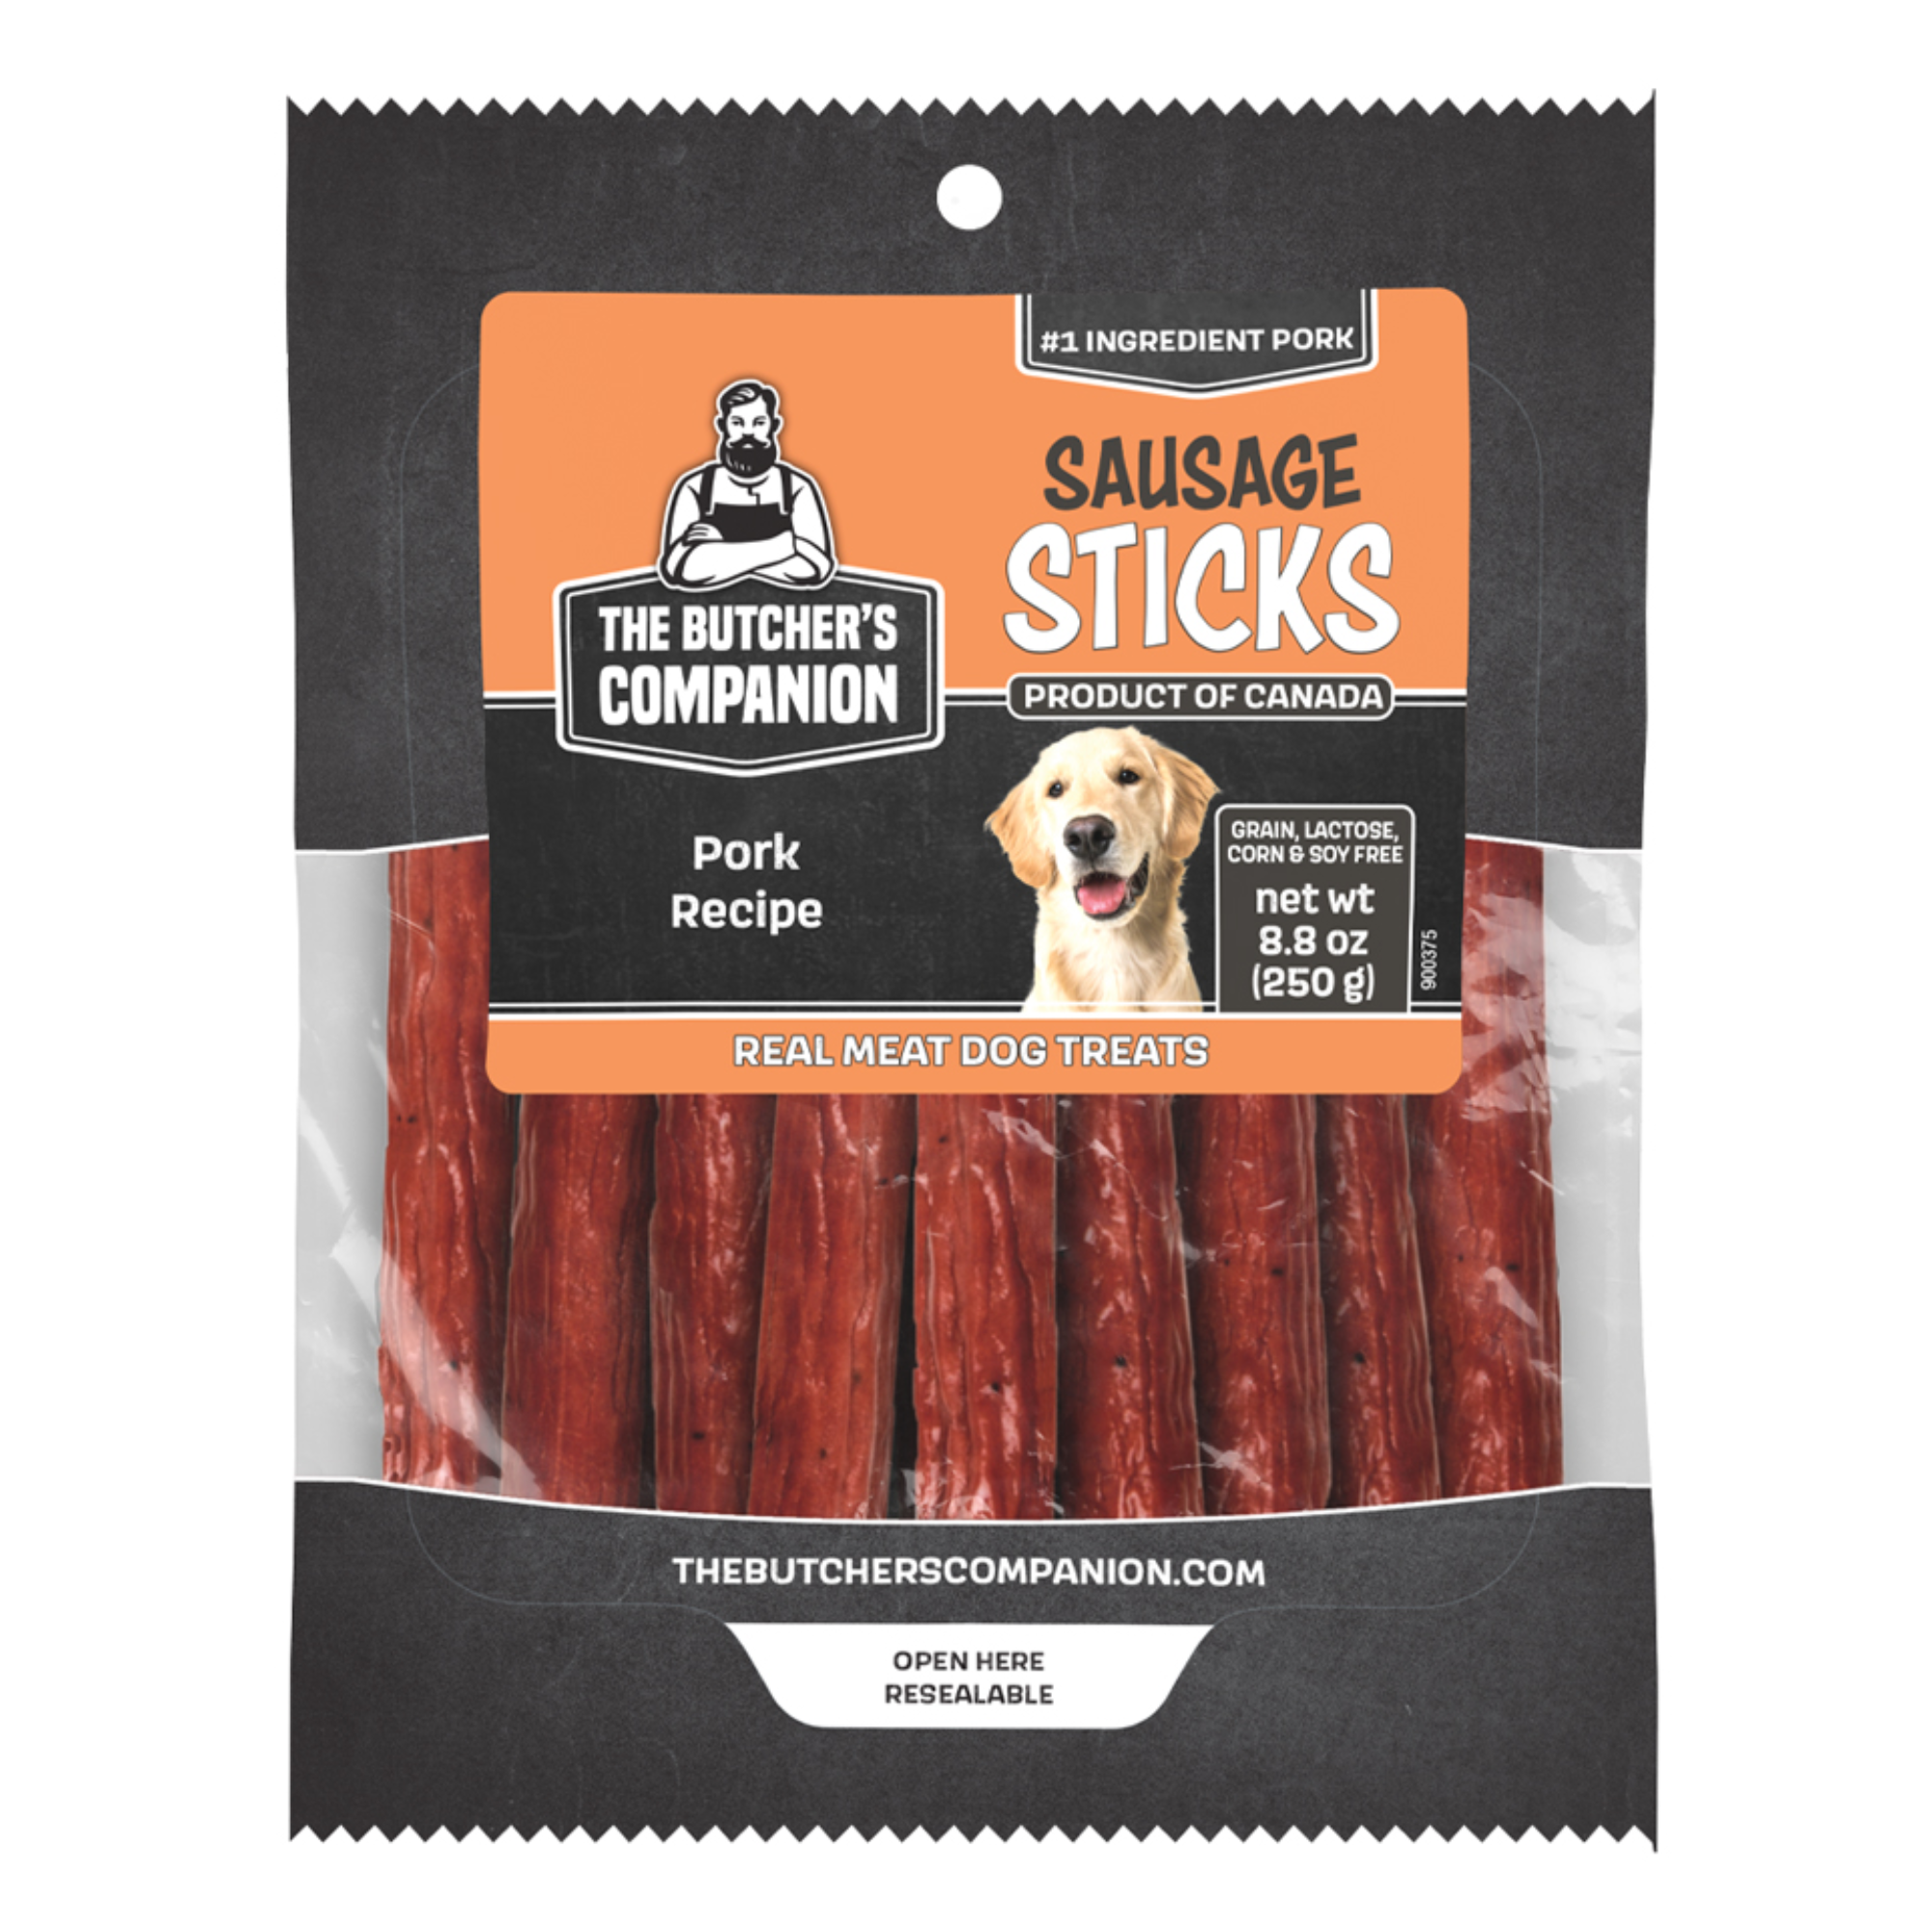 The Butchers Companion Pork Sausage Sticks